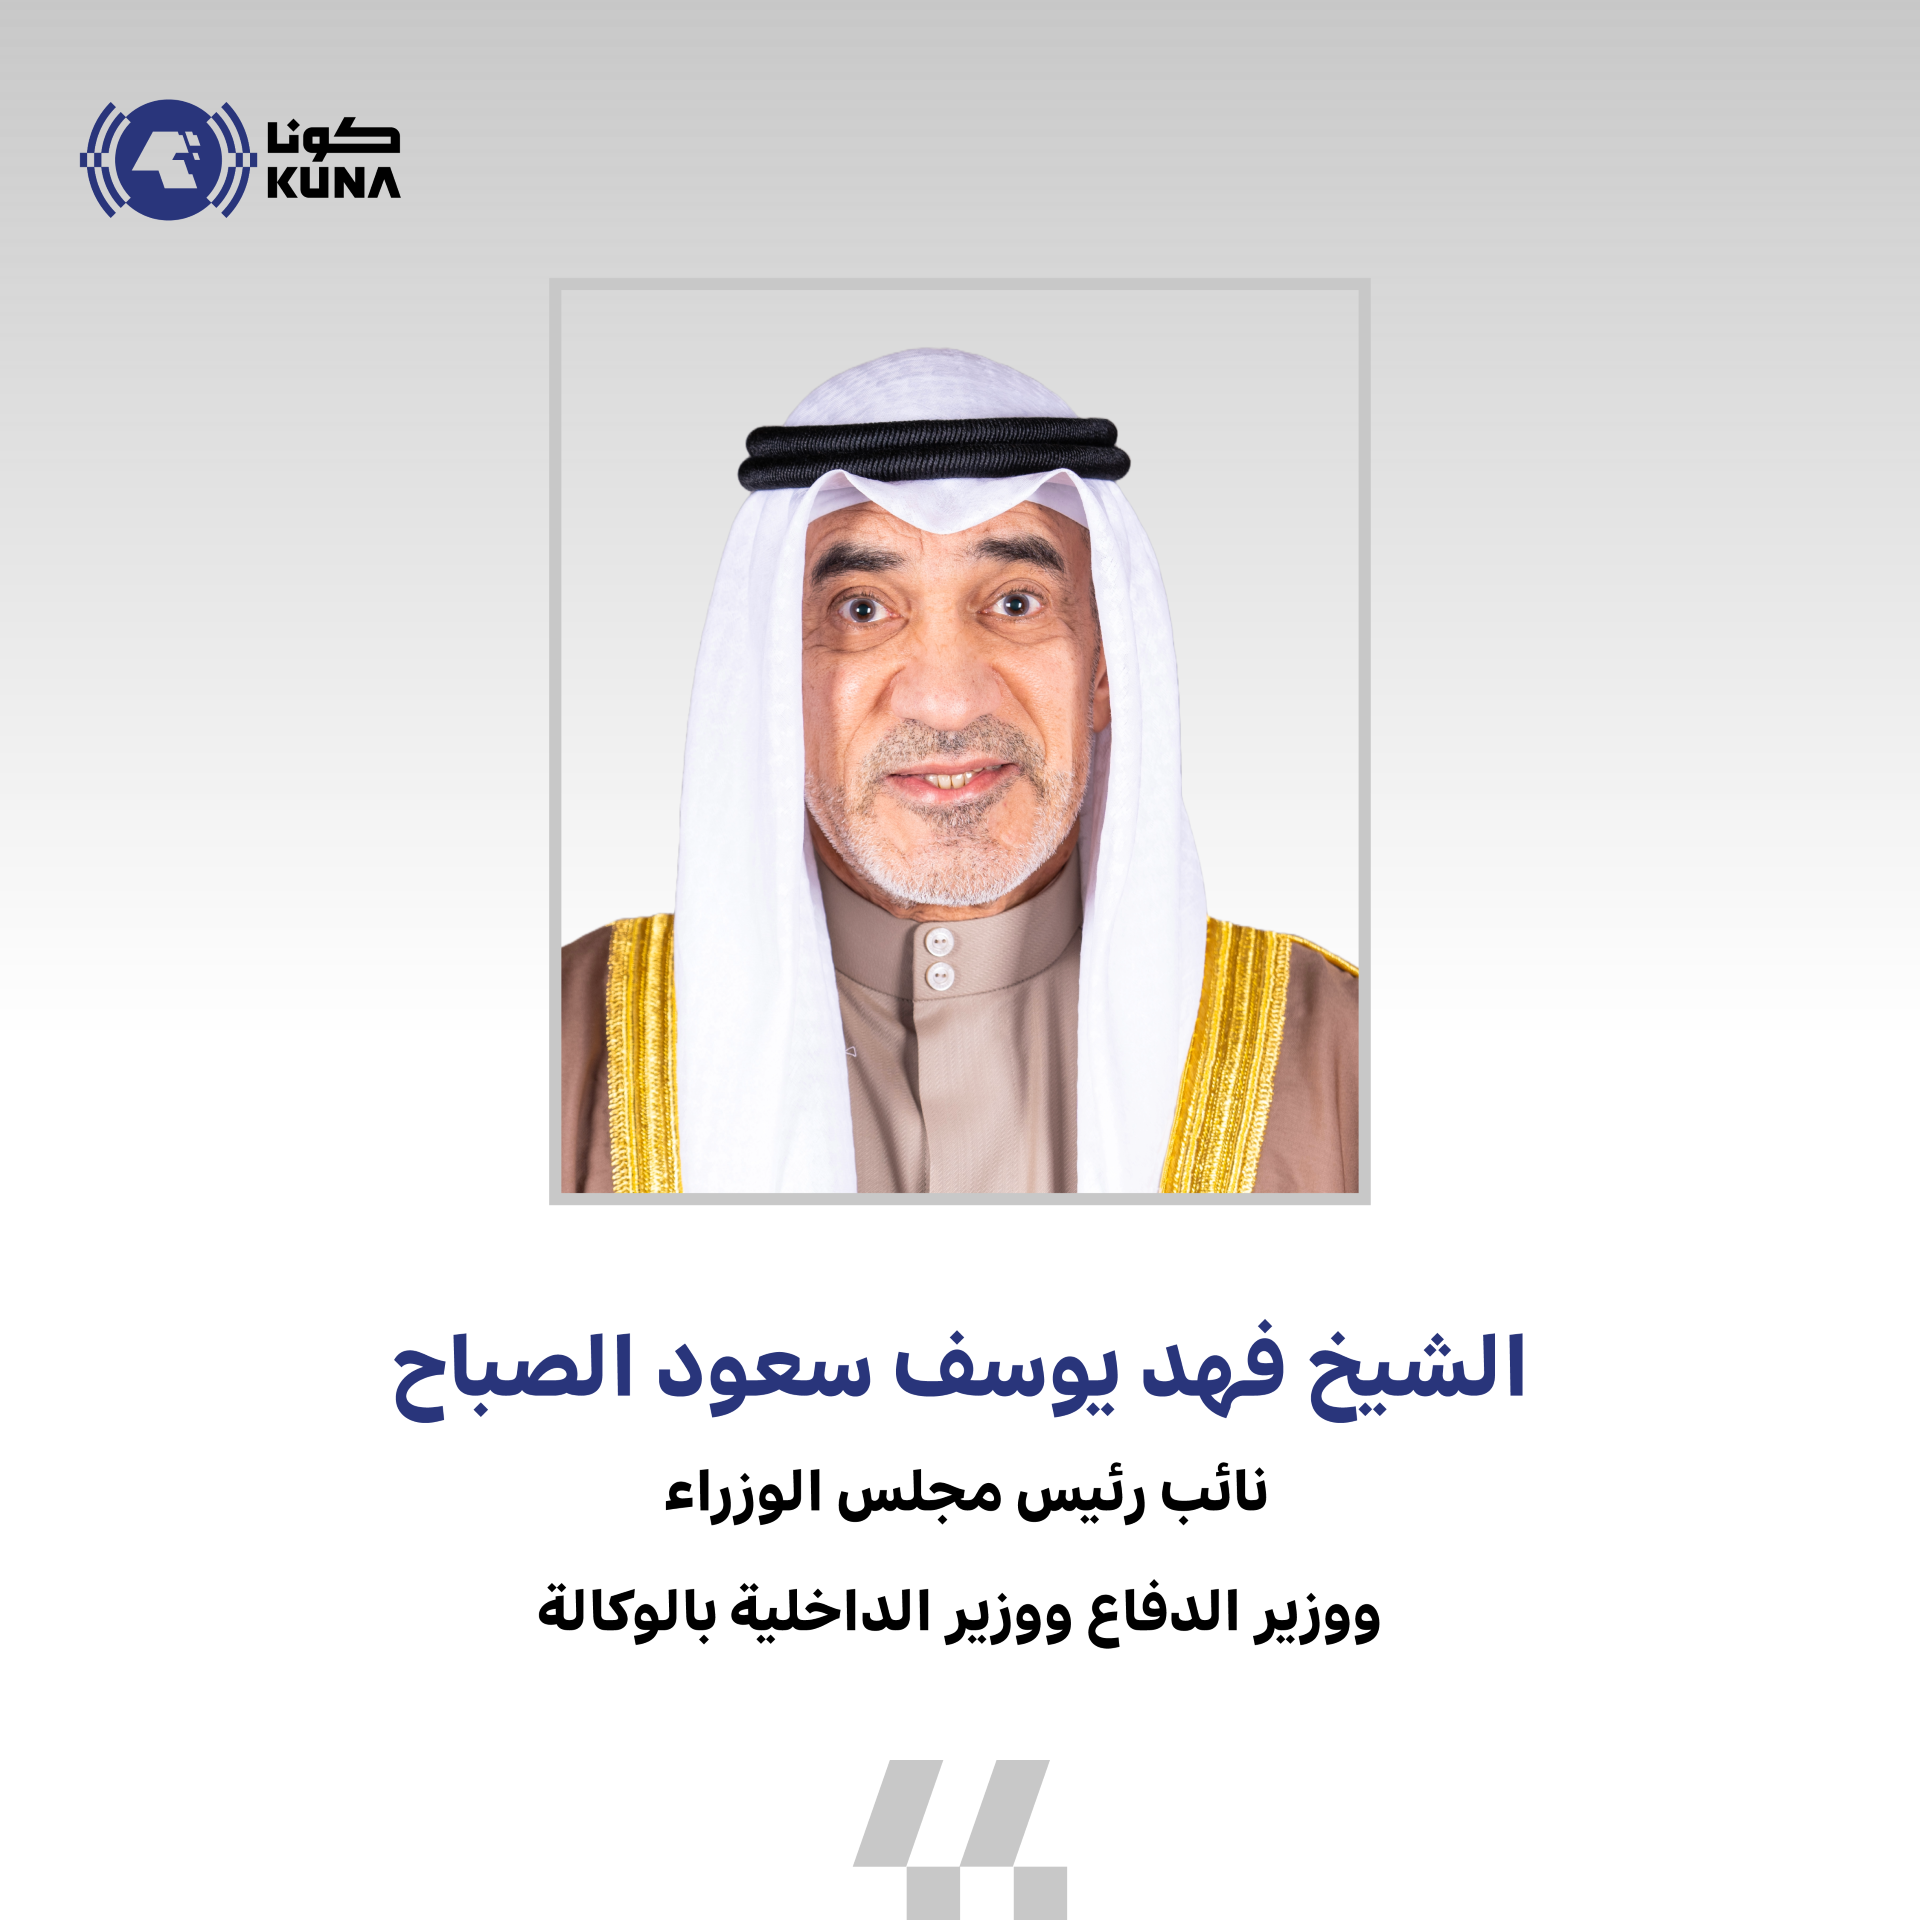 وزير الدفاع ووزير الداخلية بالوكالة يعزي نظيريه في السعودية بوفاة الأمير بدر بن عبدالمحسن                                                                                                                                                                 